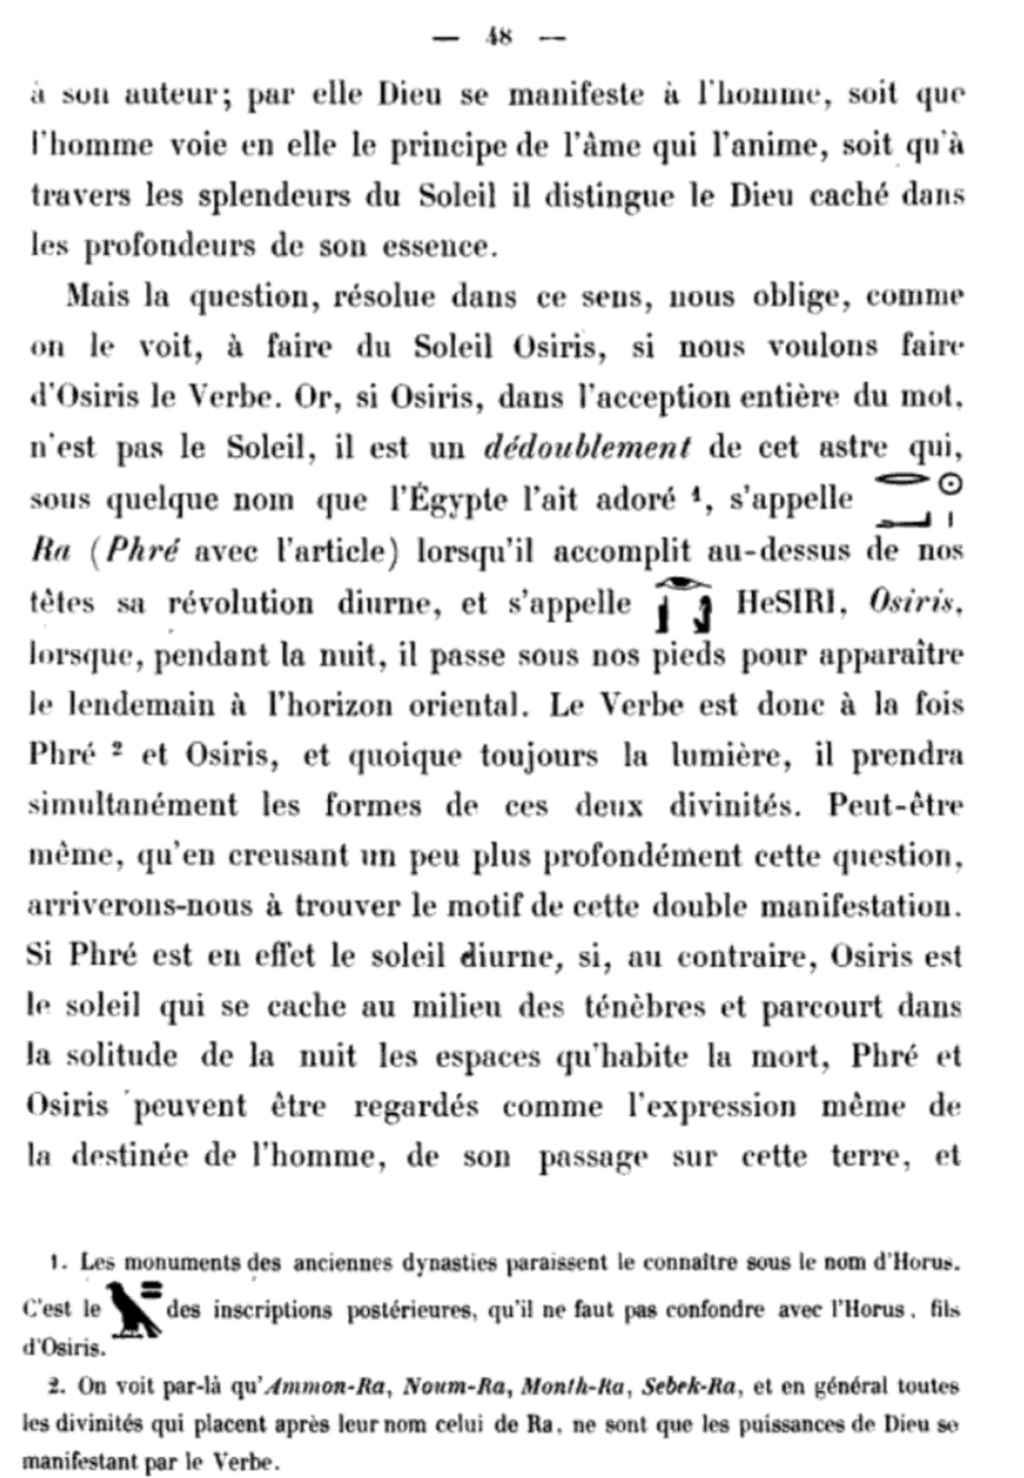 La franc-maçonnerie, la Gnose et le gnosticisme.  - Page 4 20200712